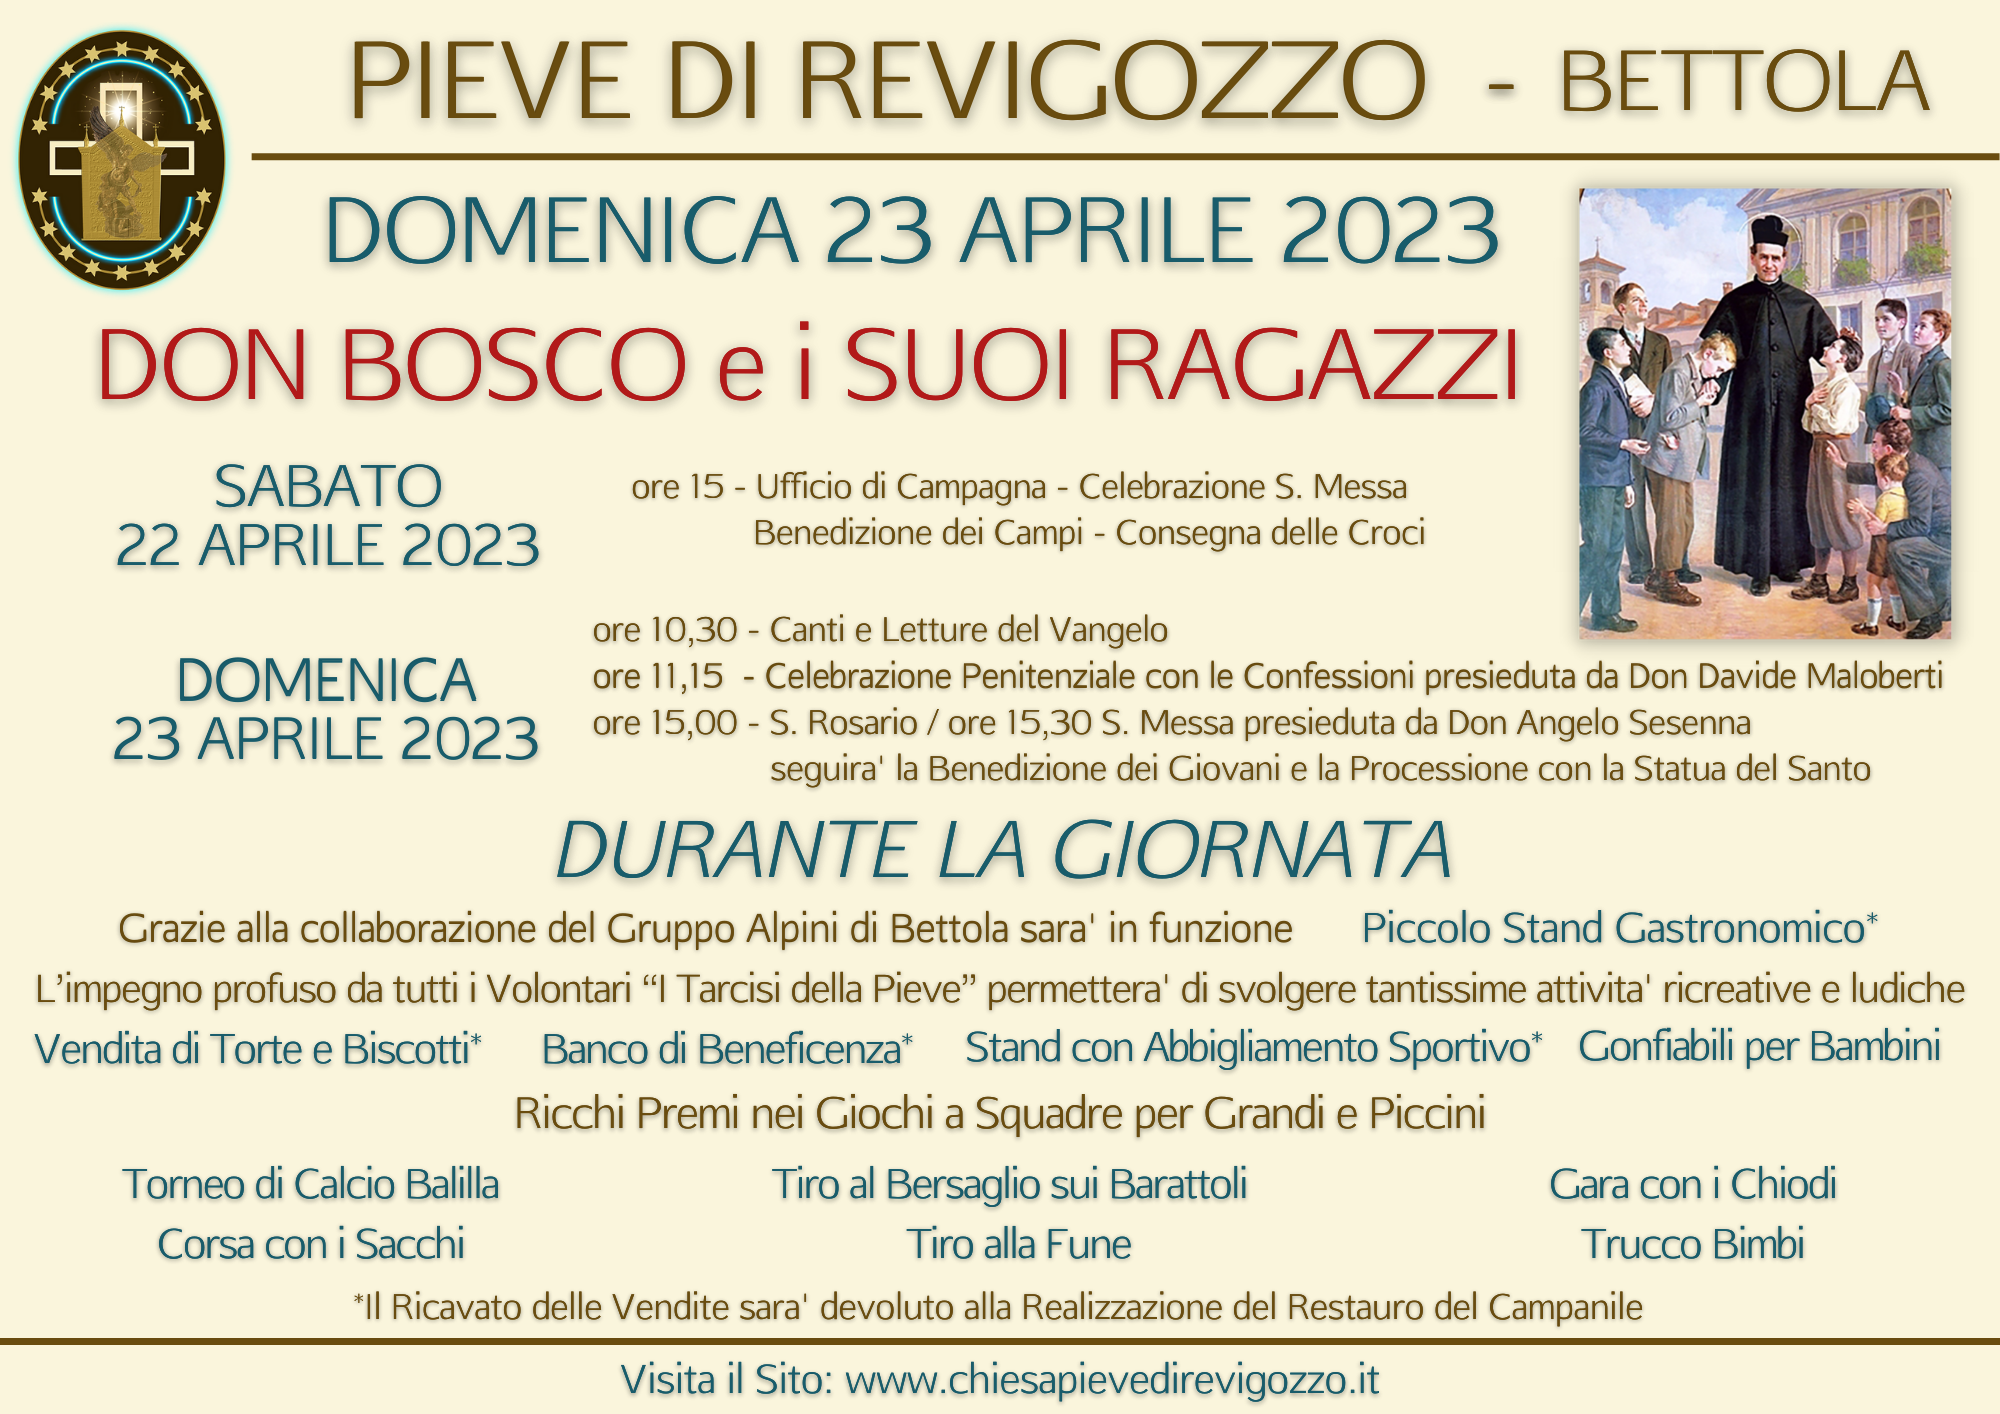 DOMENICA 23 APRILE 2023 - Don Bosco e i suoi Ragazzi